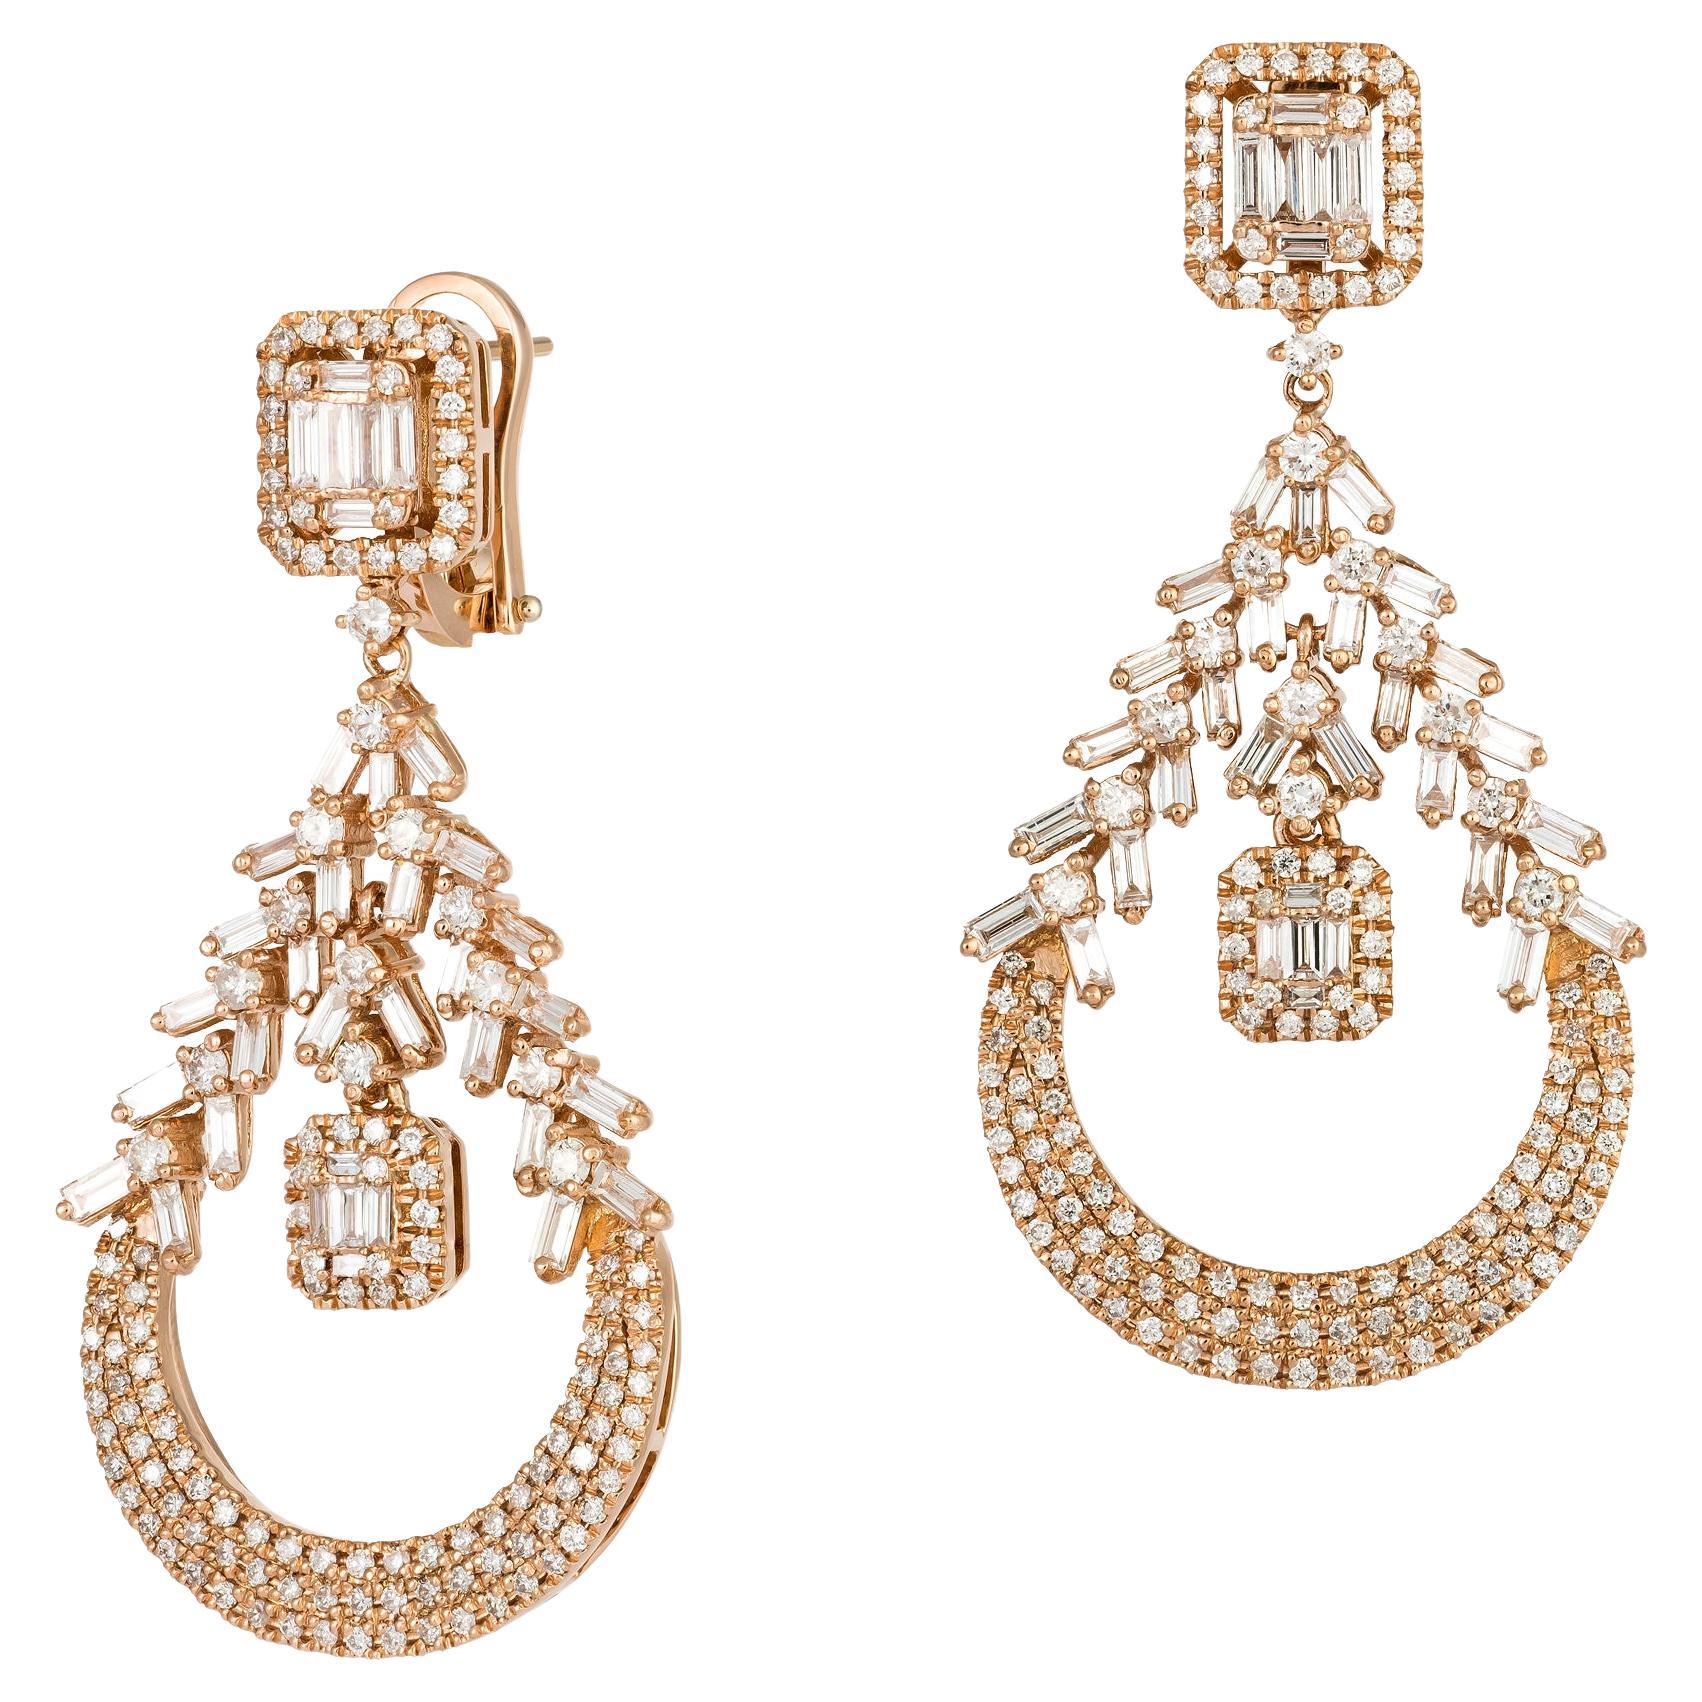 Modern White Pink Gold 18K Earrings Diamond For Her